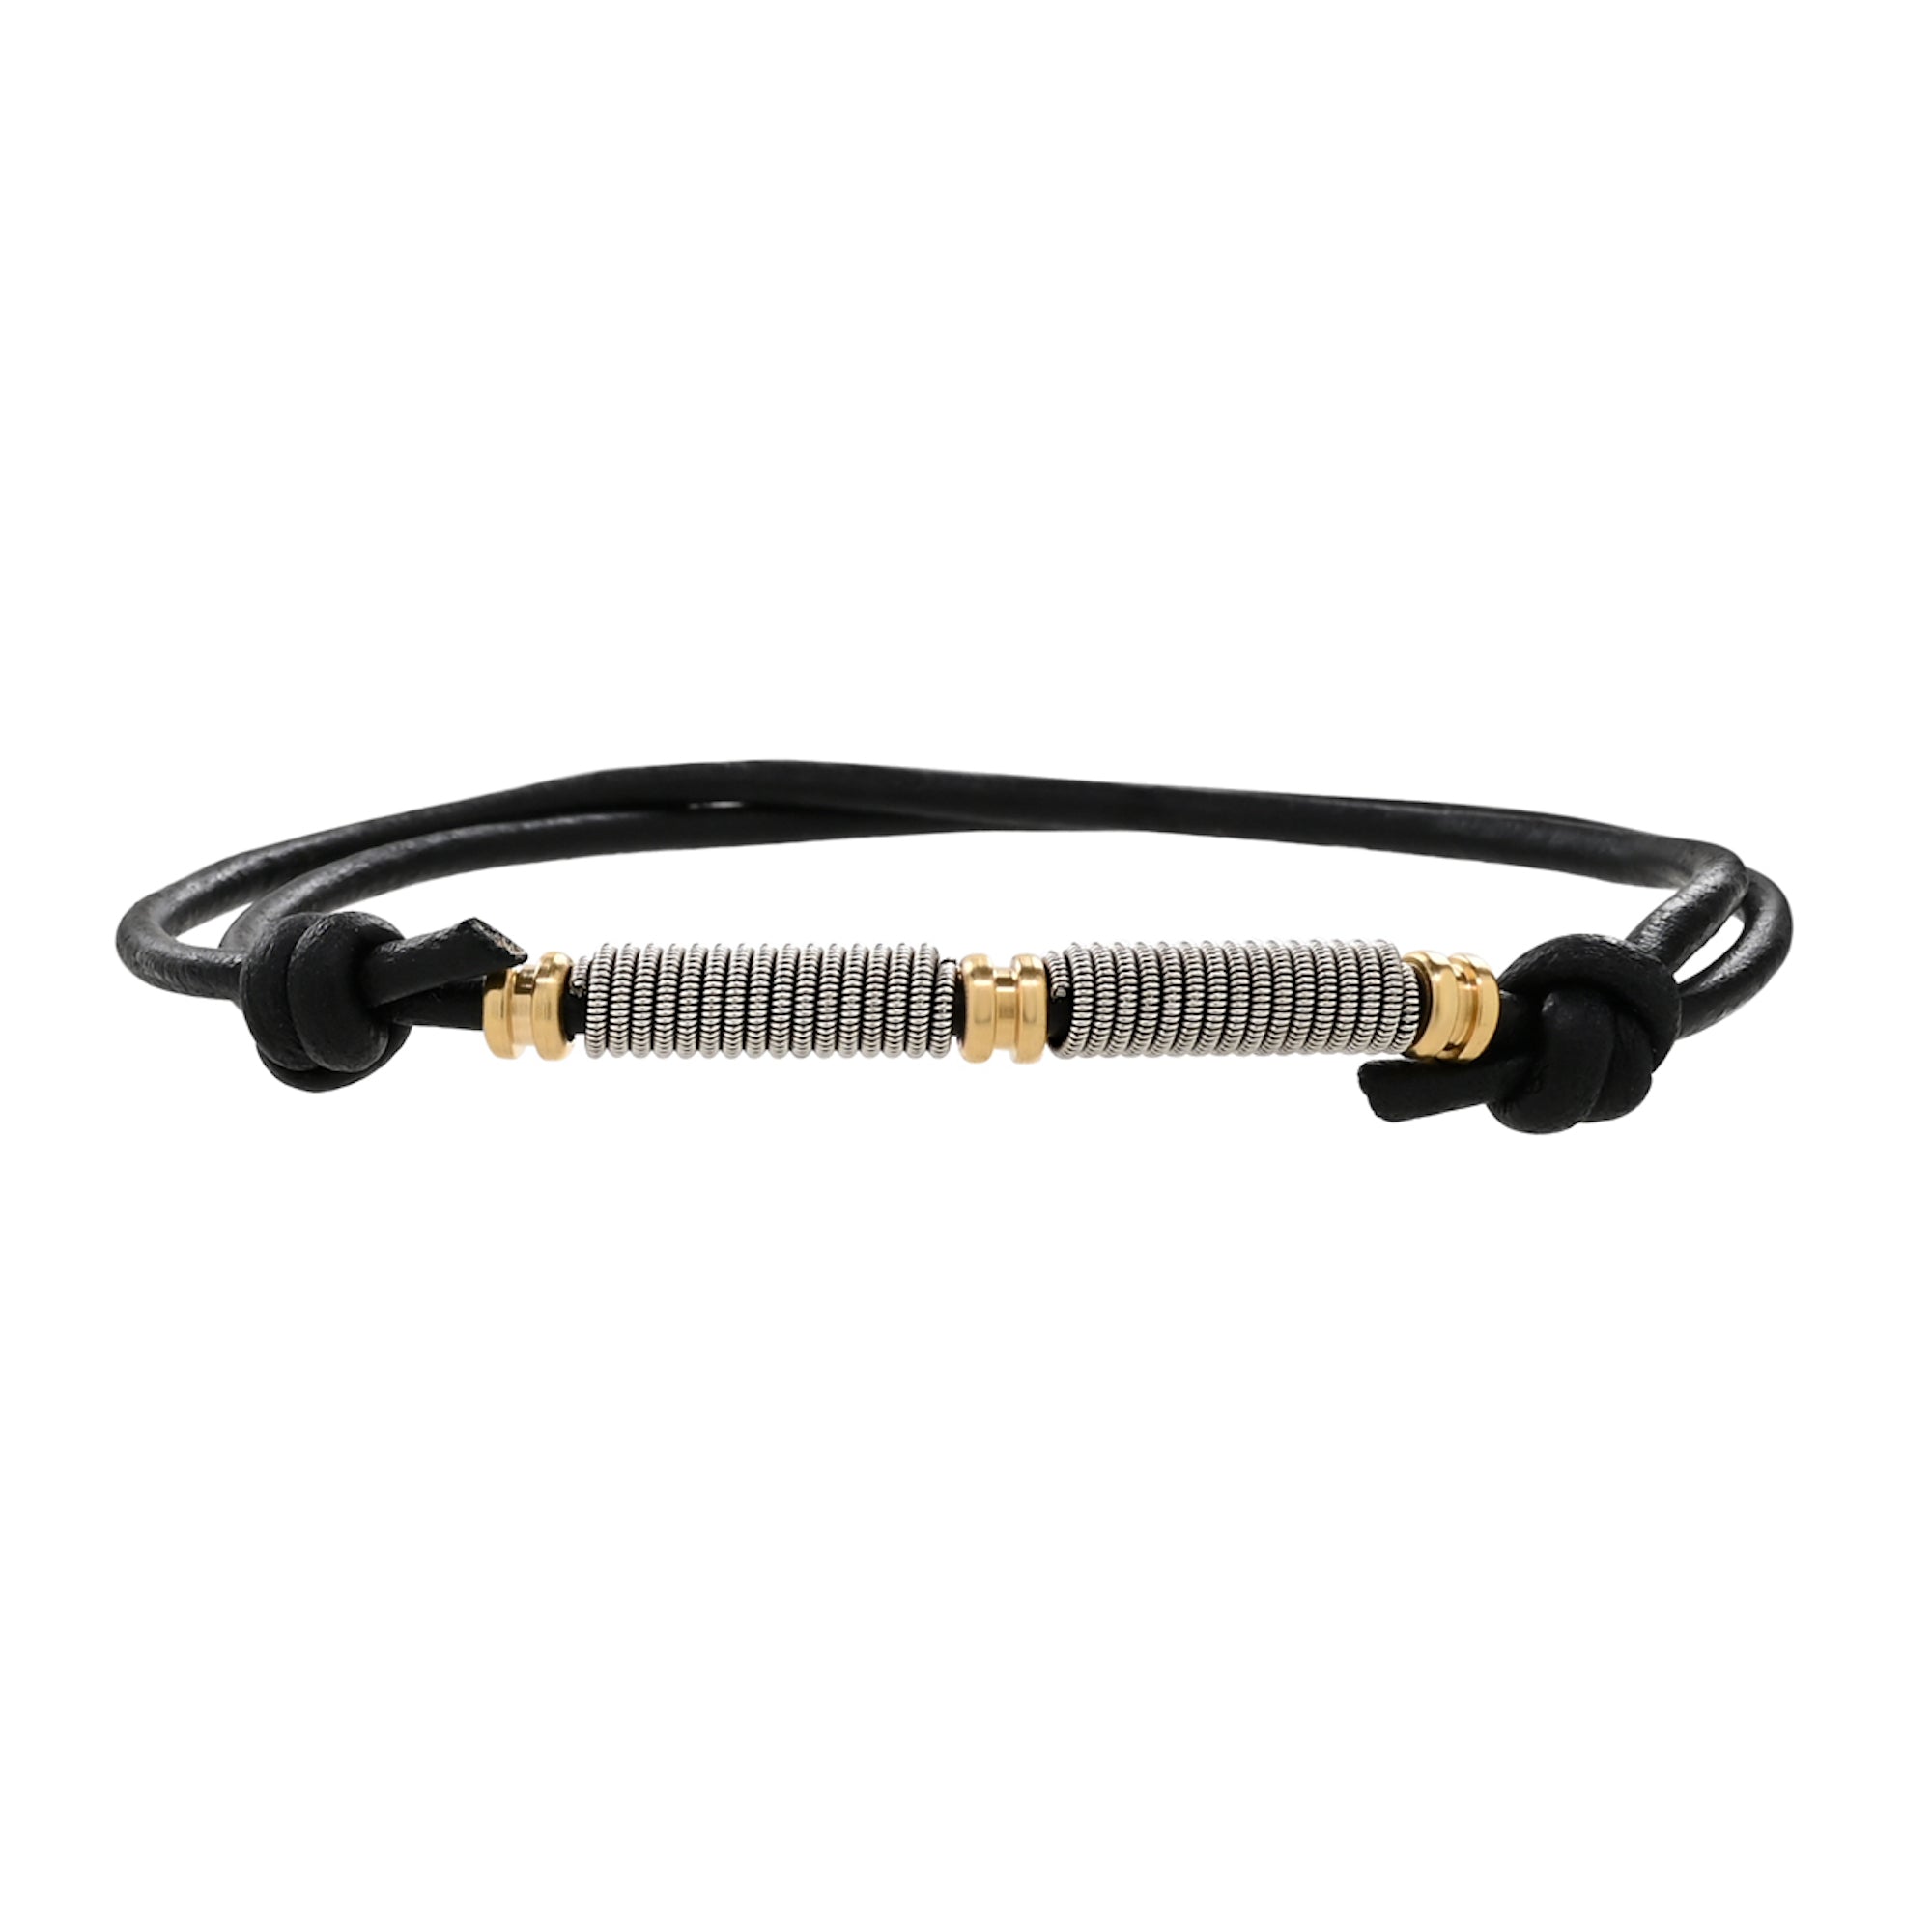 Slipknot Adjustable Leather and Guitar String Bracelet